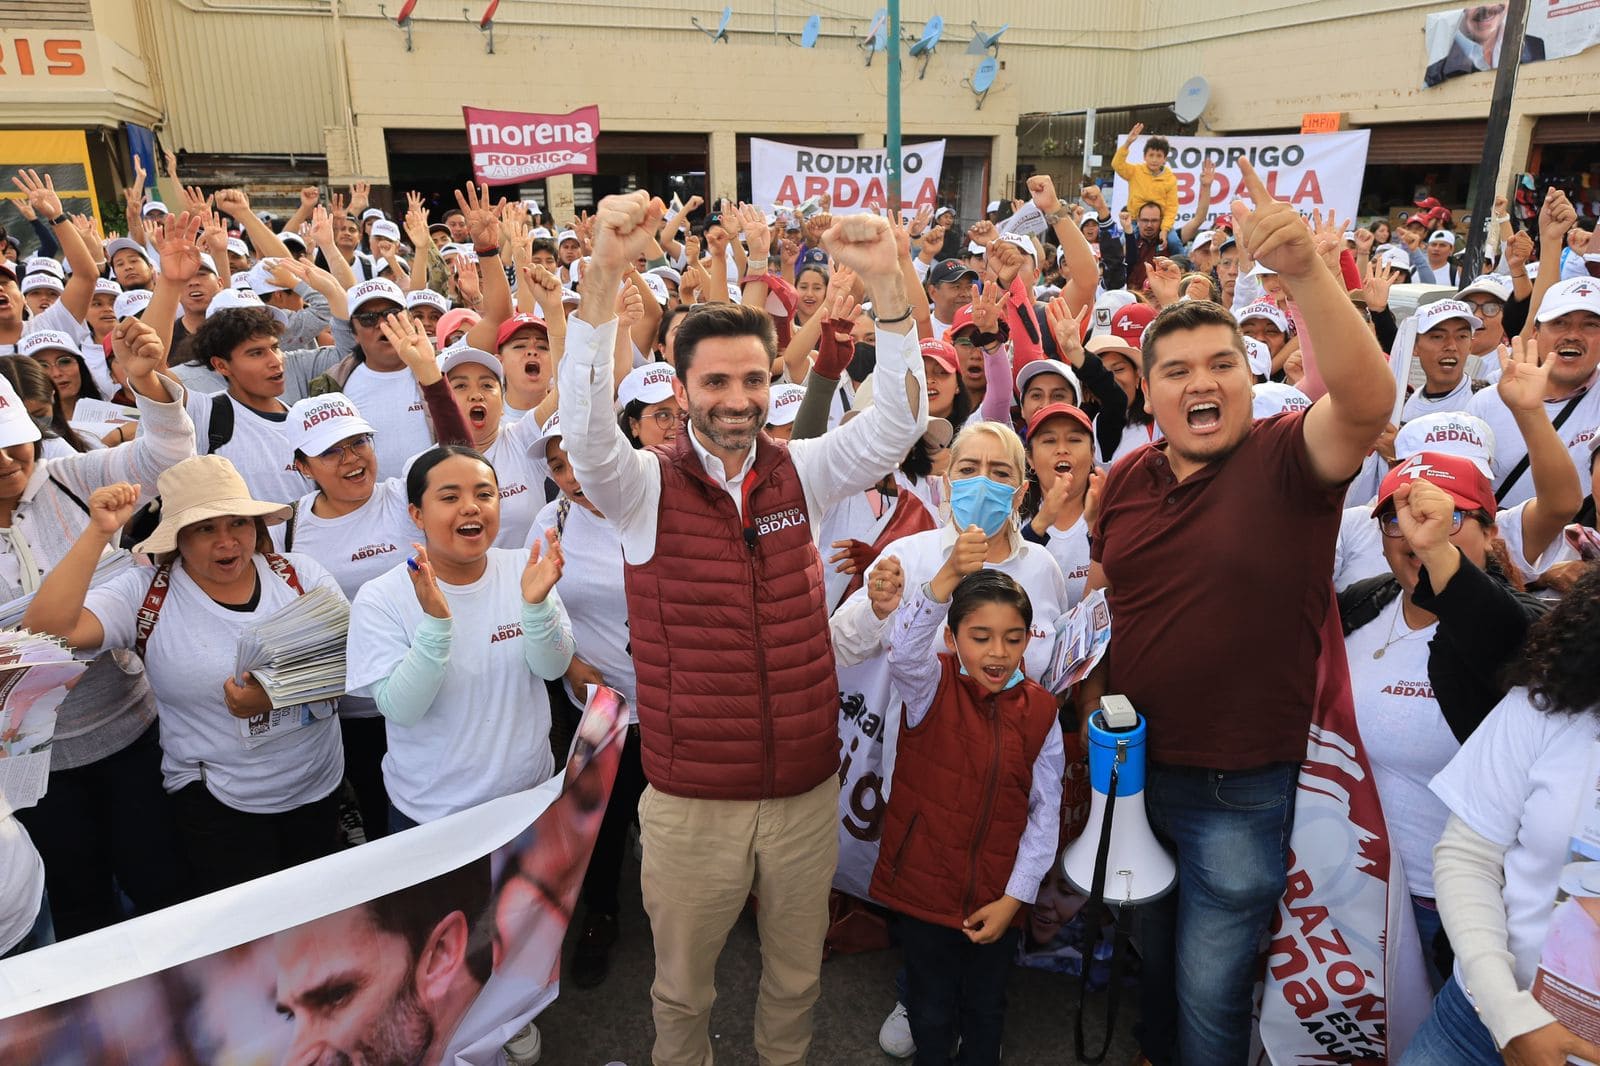 Agradecimiento y determinación: Rodrigo Abdala ante la encuesta de Morena en Puebla